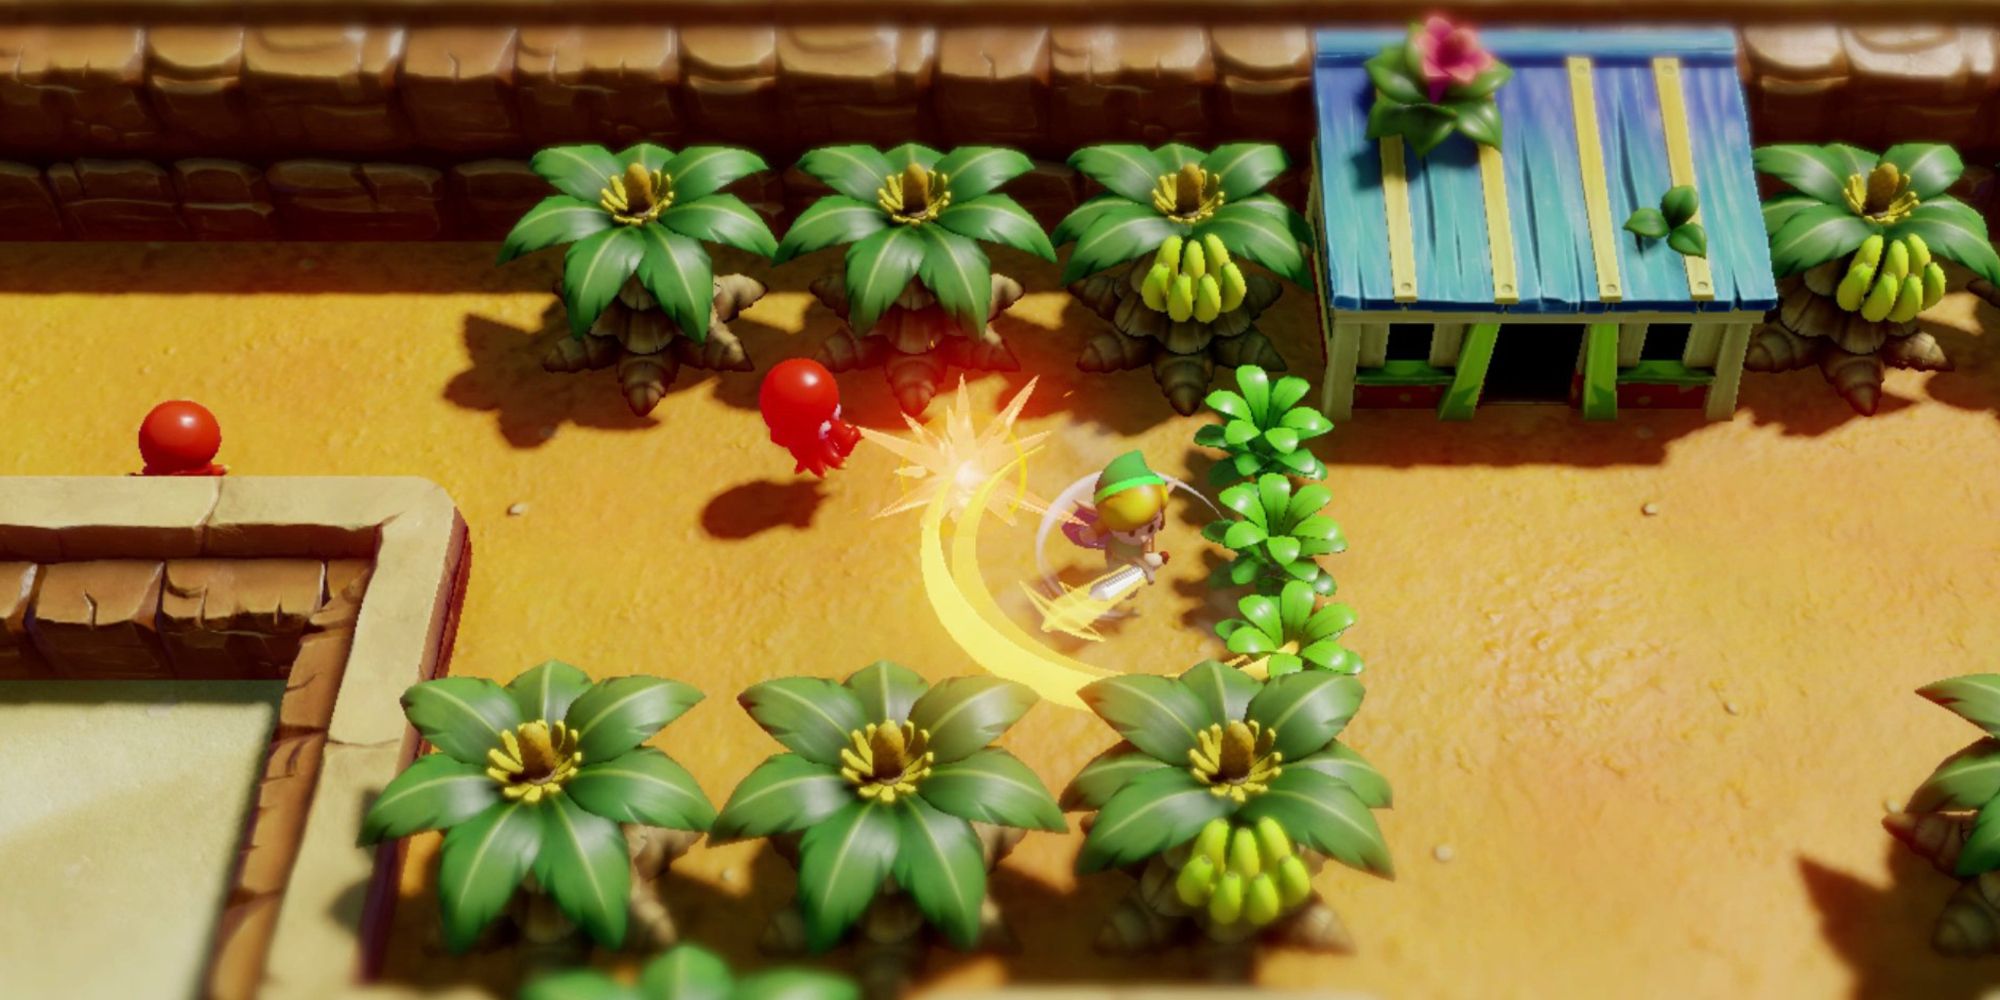 Link fighting enemies in The Legend of Zelda Link's Awakening